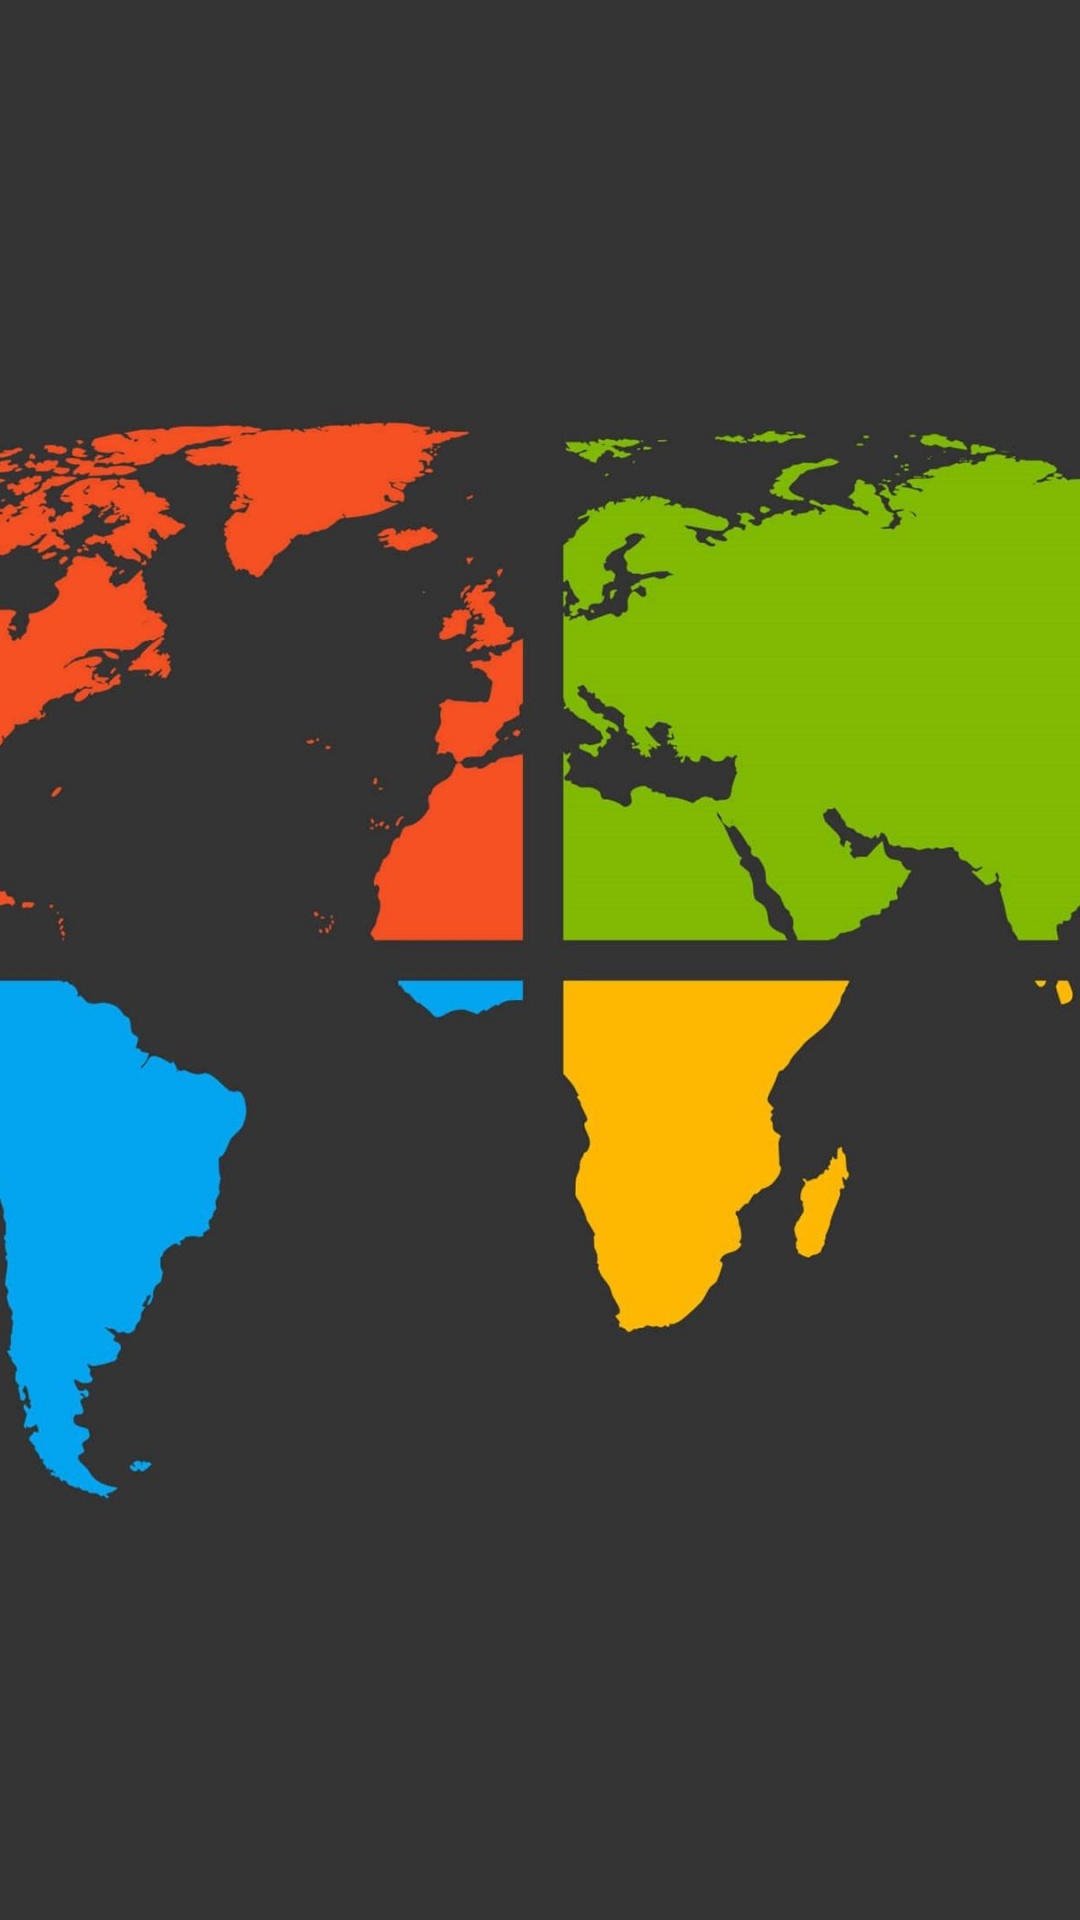 世界地图, 地球, 地图, 矢量图形, 色彩 壁纸 1080x1920 允许